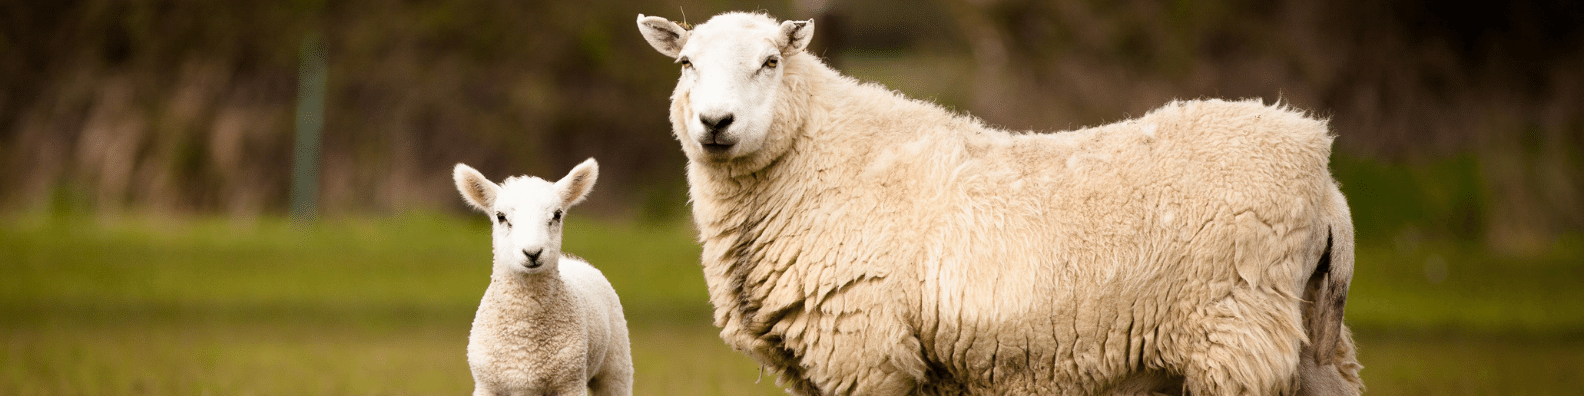 возраст овец по человеческим меркам